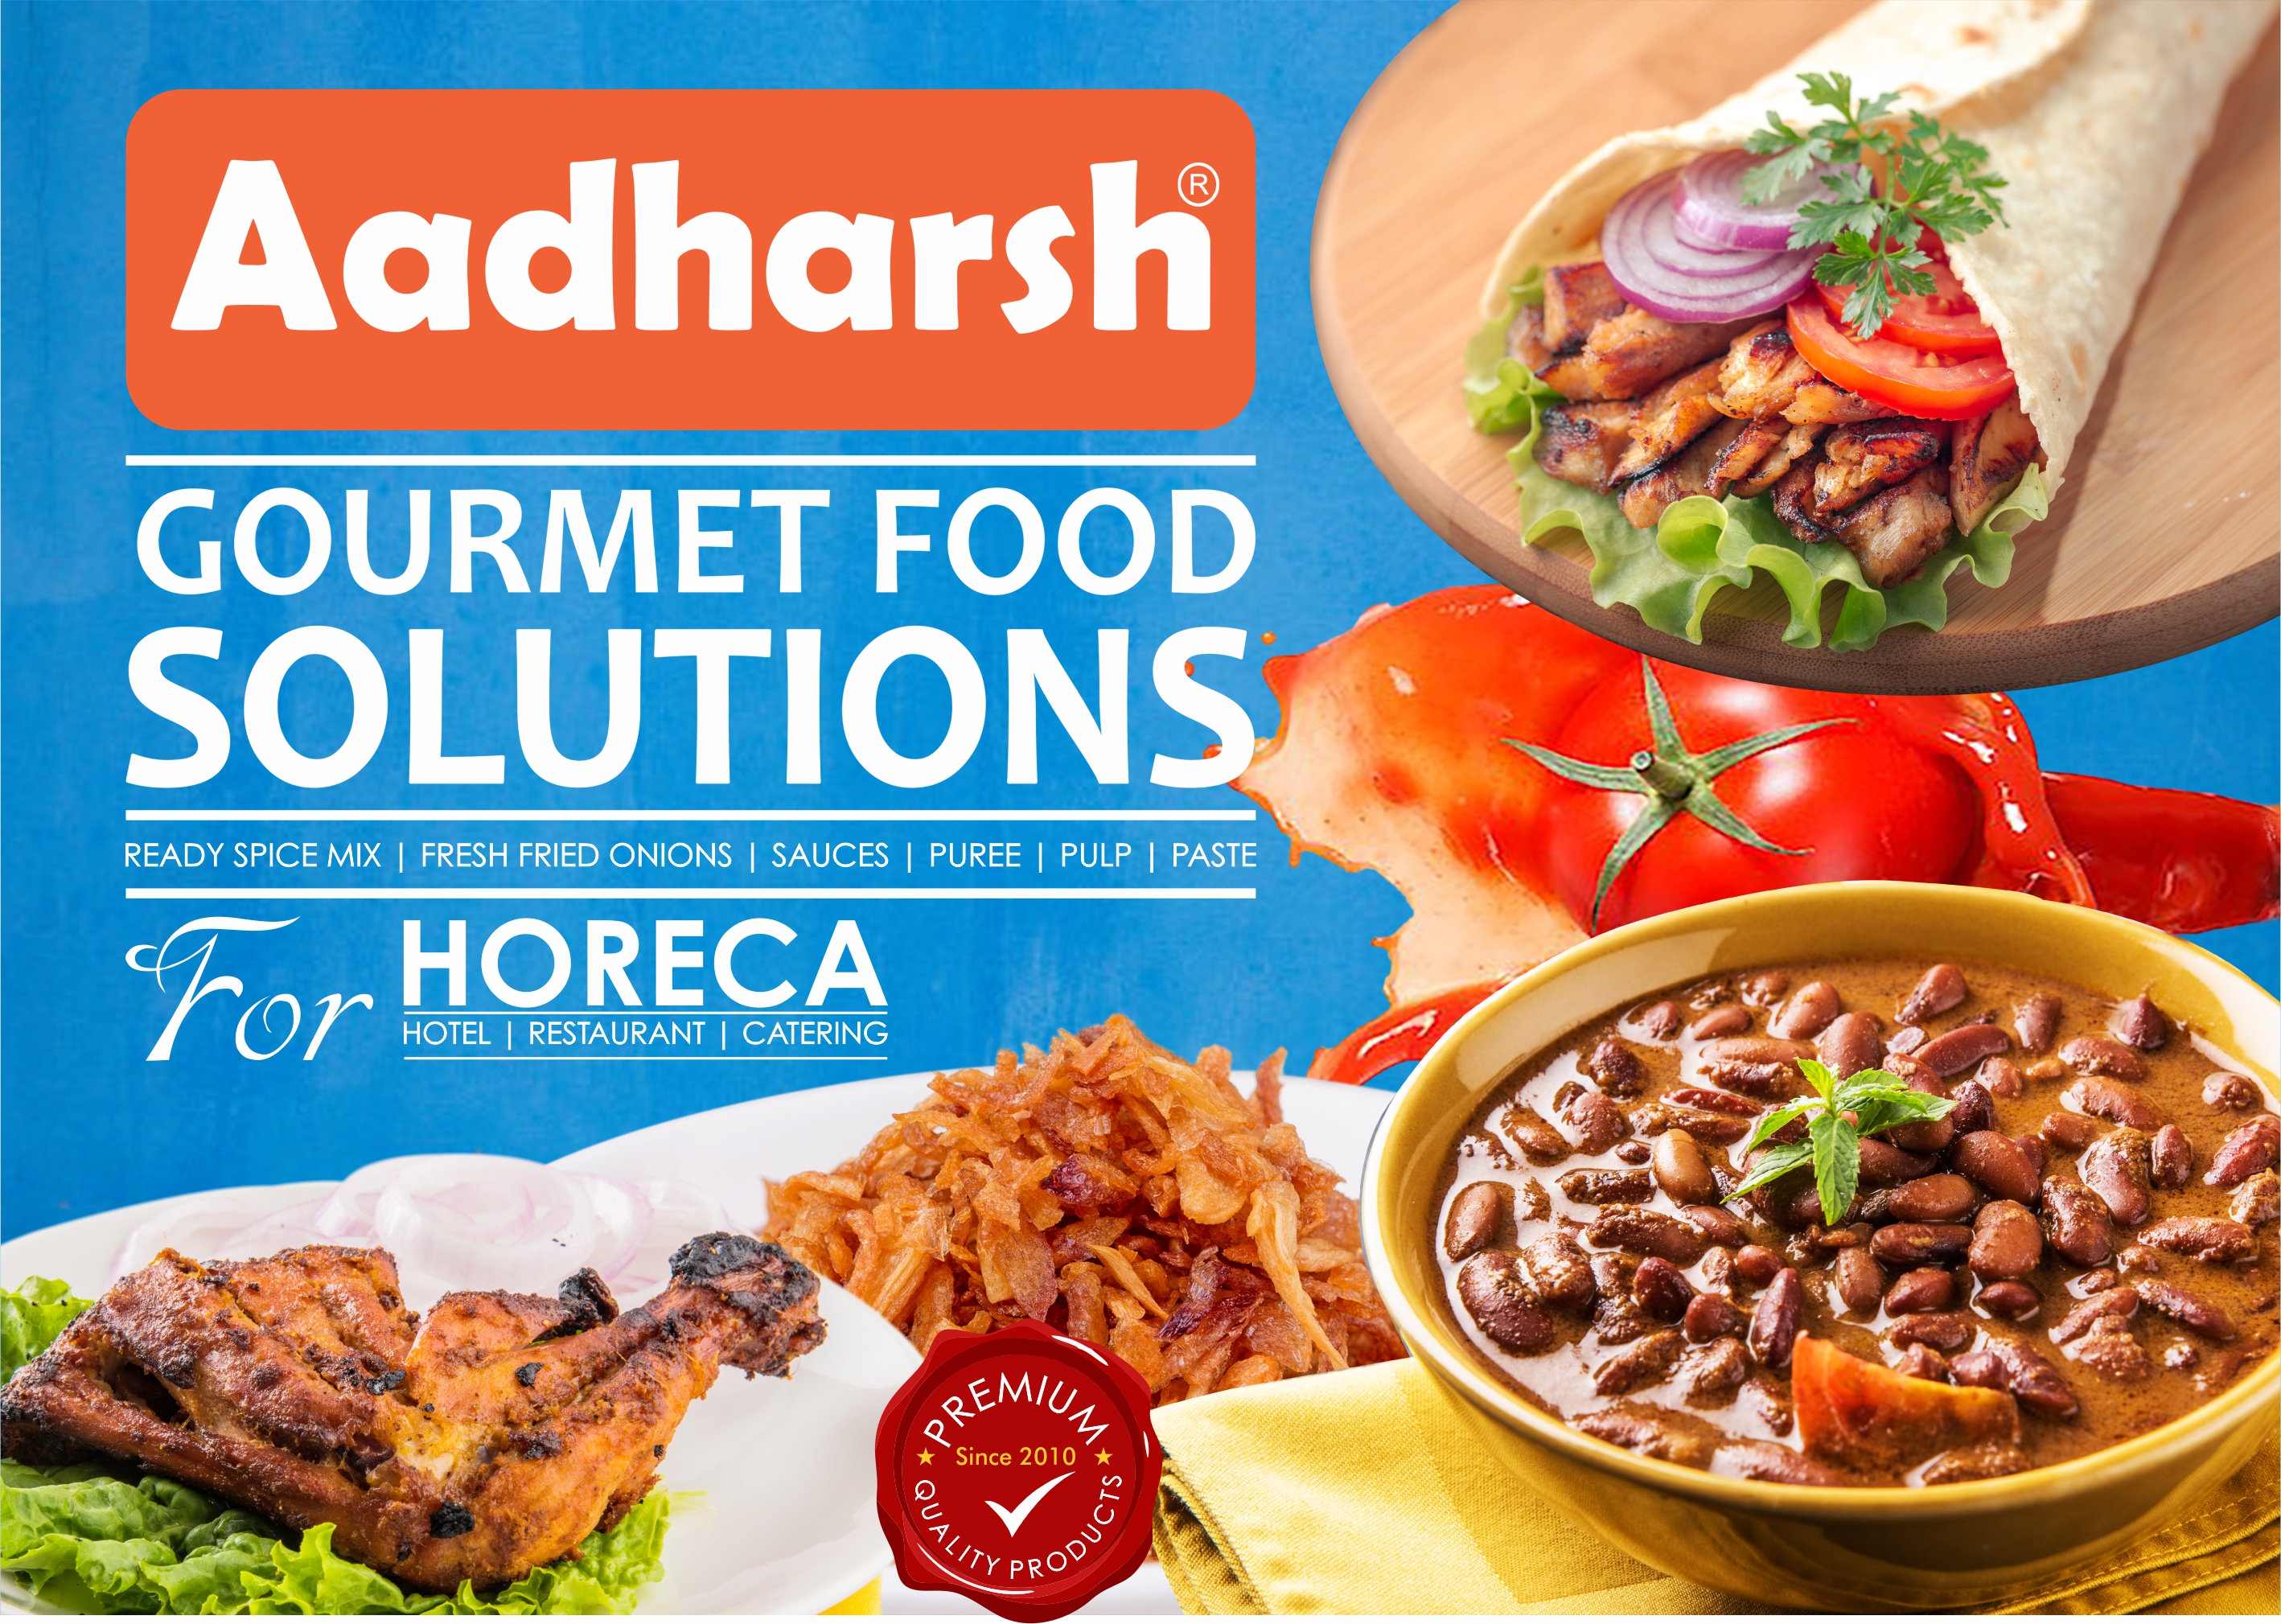 Aadharsh Foods